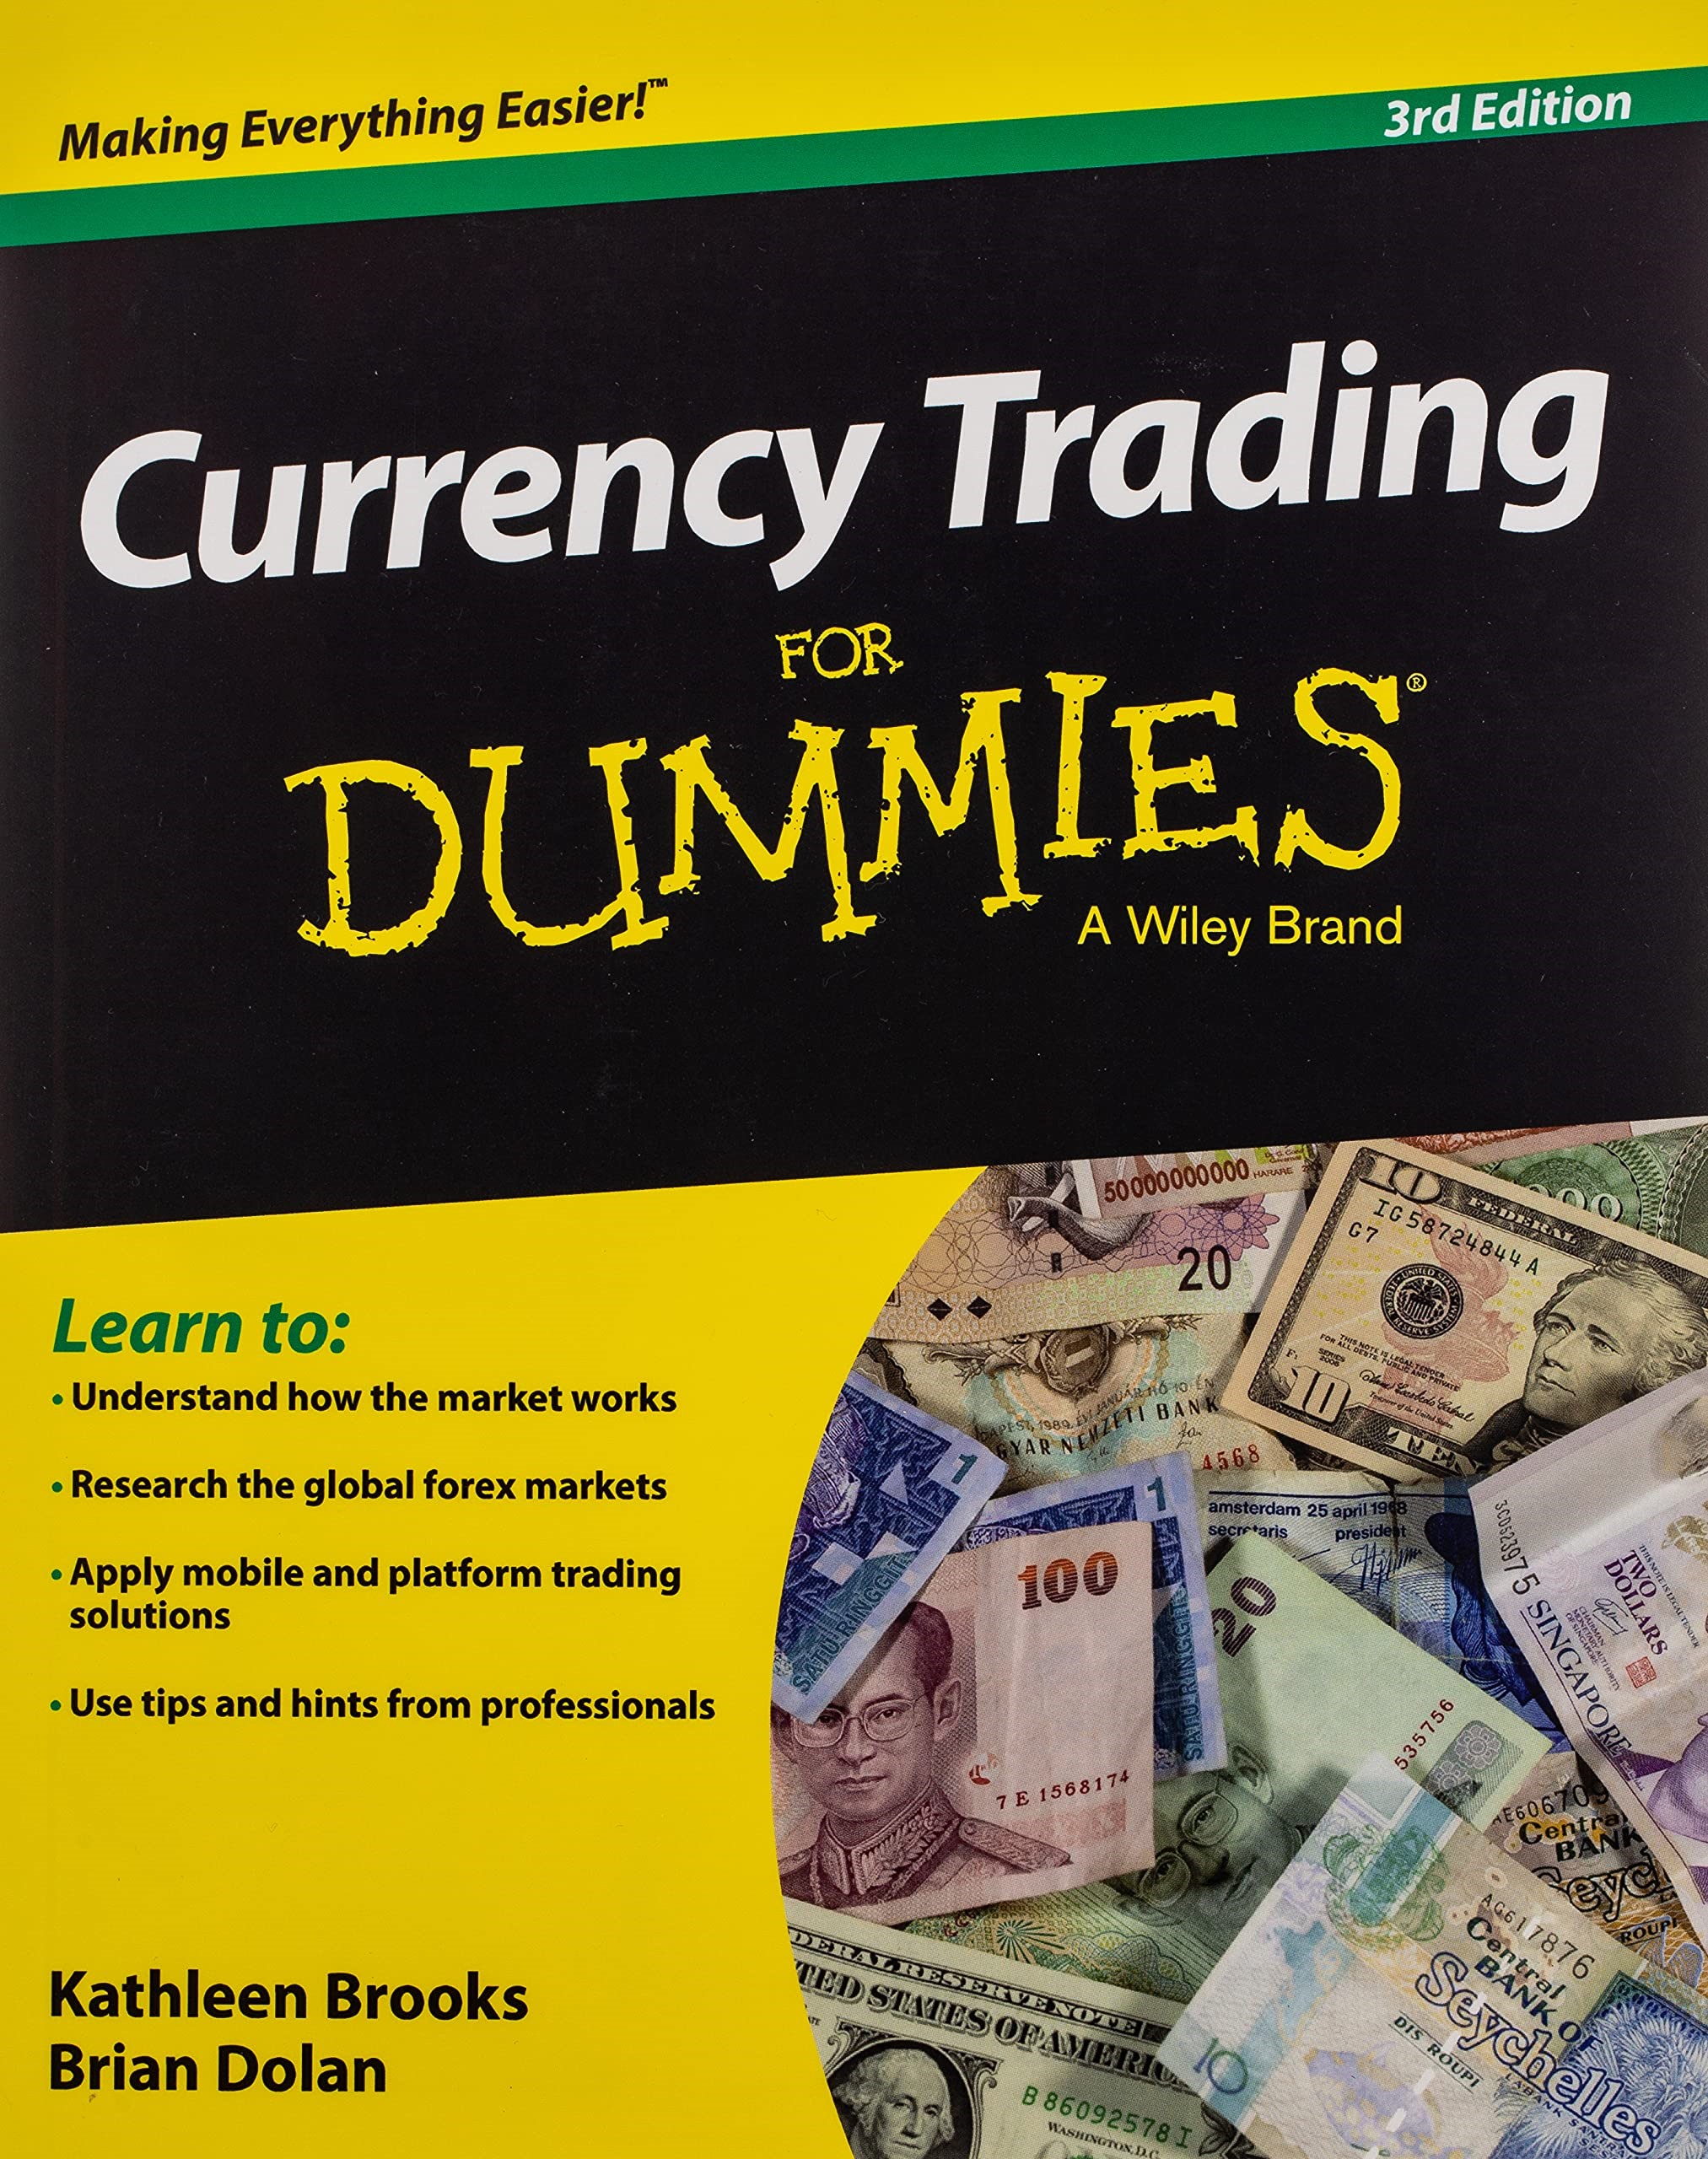 Denna enkla engelska guide till valutahandel Currency Trading For Dummies är en praktisk, användarvänlig guide som förklarar hur